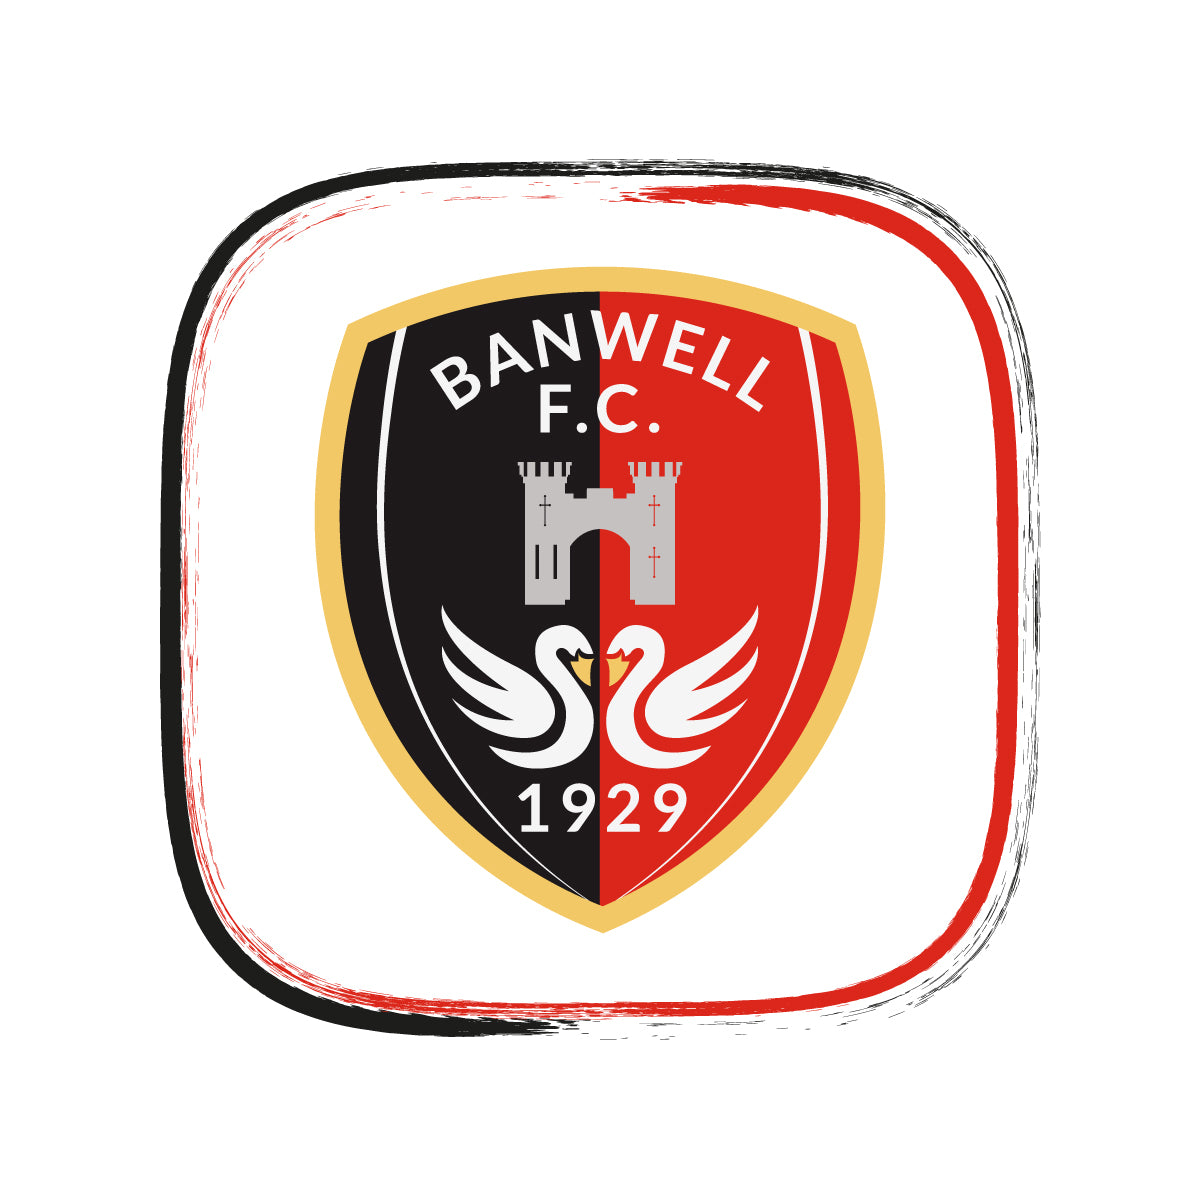 Banwell F.C